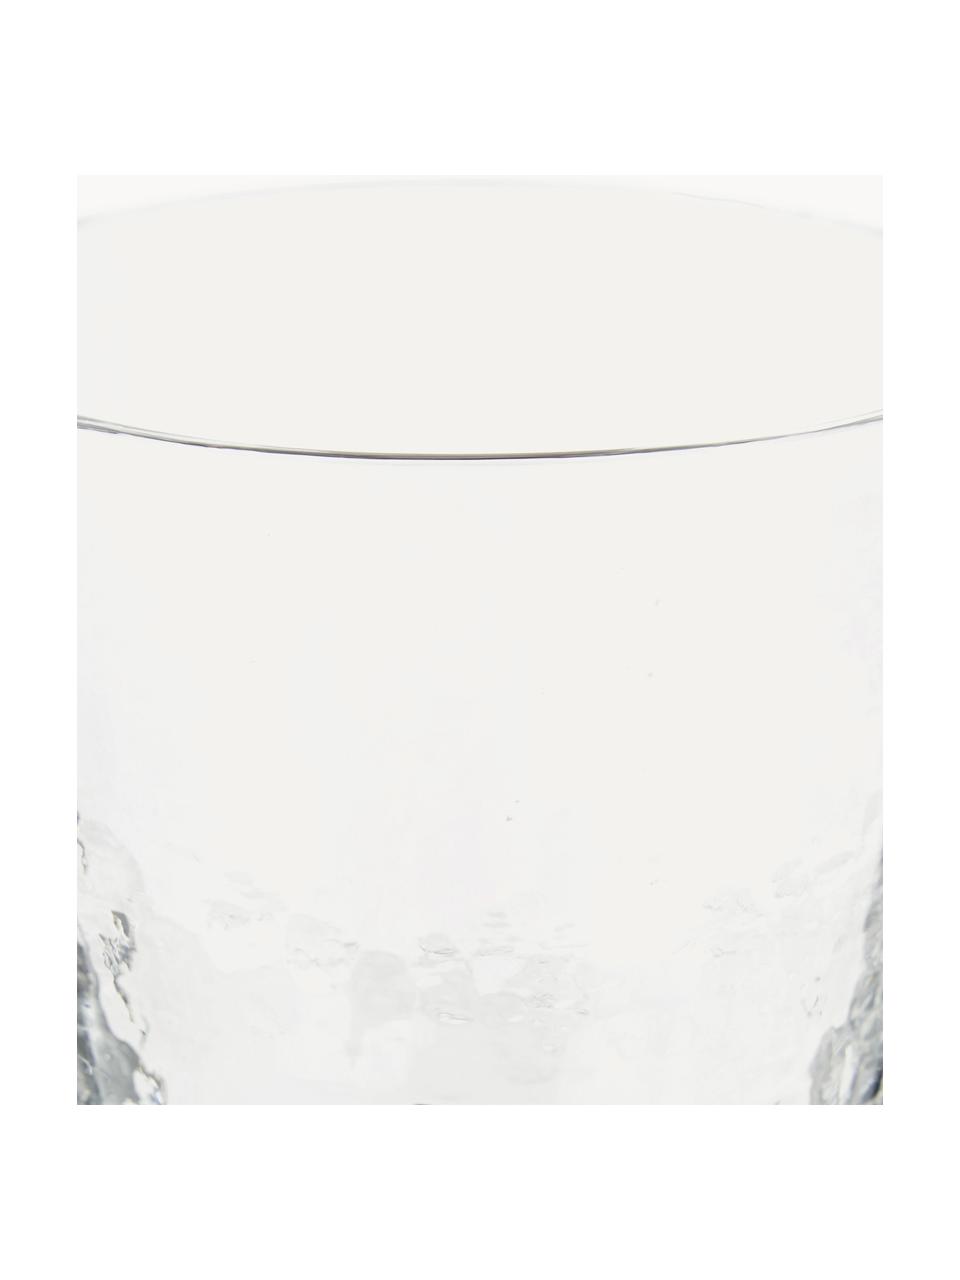 Ručně foukaná sklenices nerovným povrchem Hammered, 4 ks, Foukané sklo, Transparentní, Ø 9 cm, V 10 cm, 250 ml